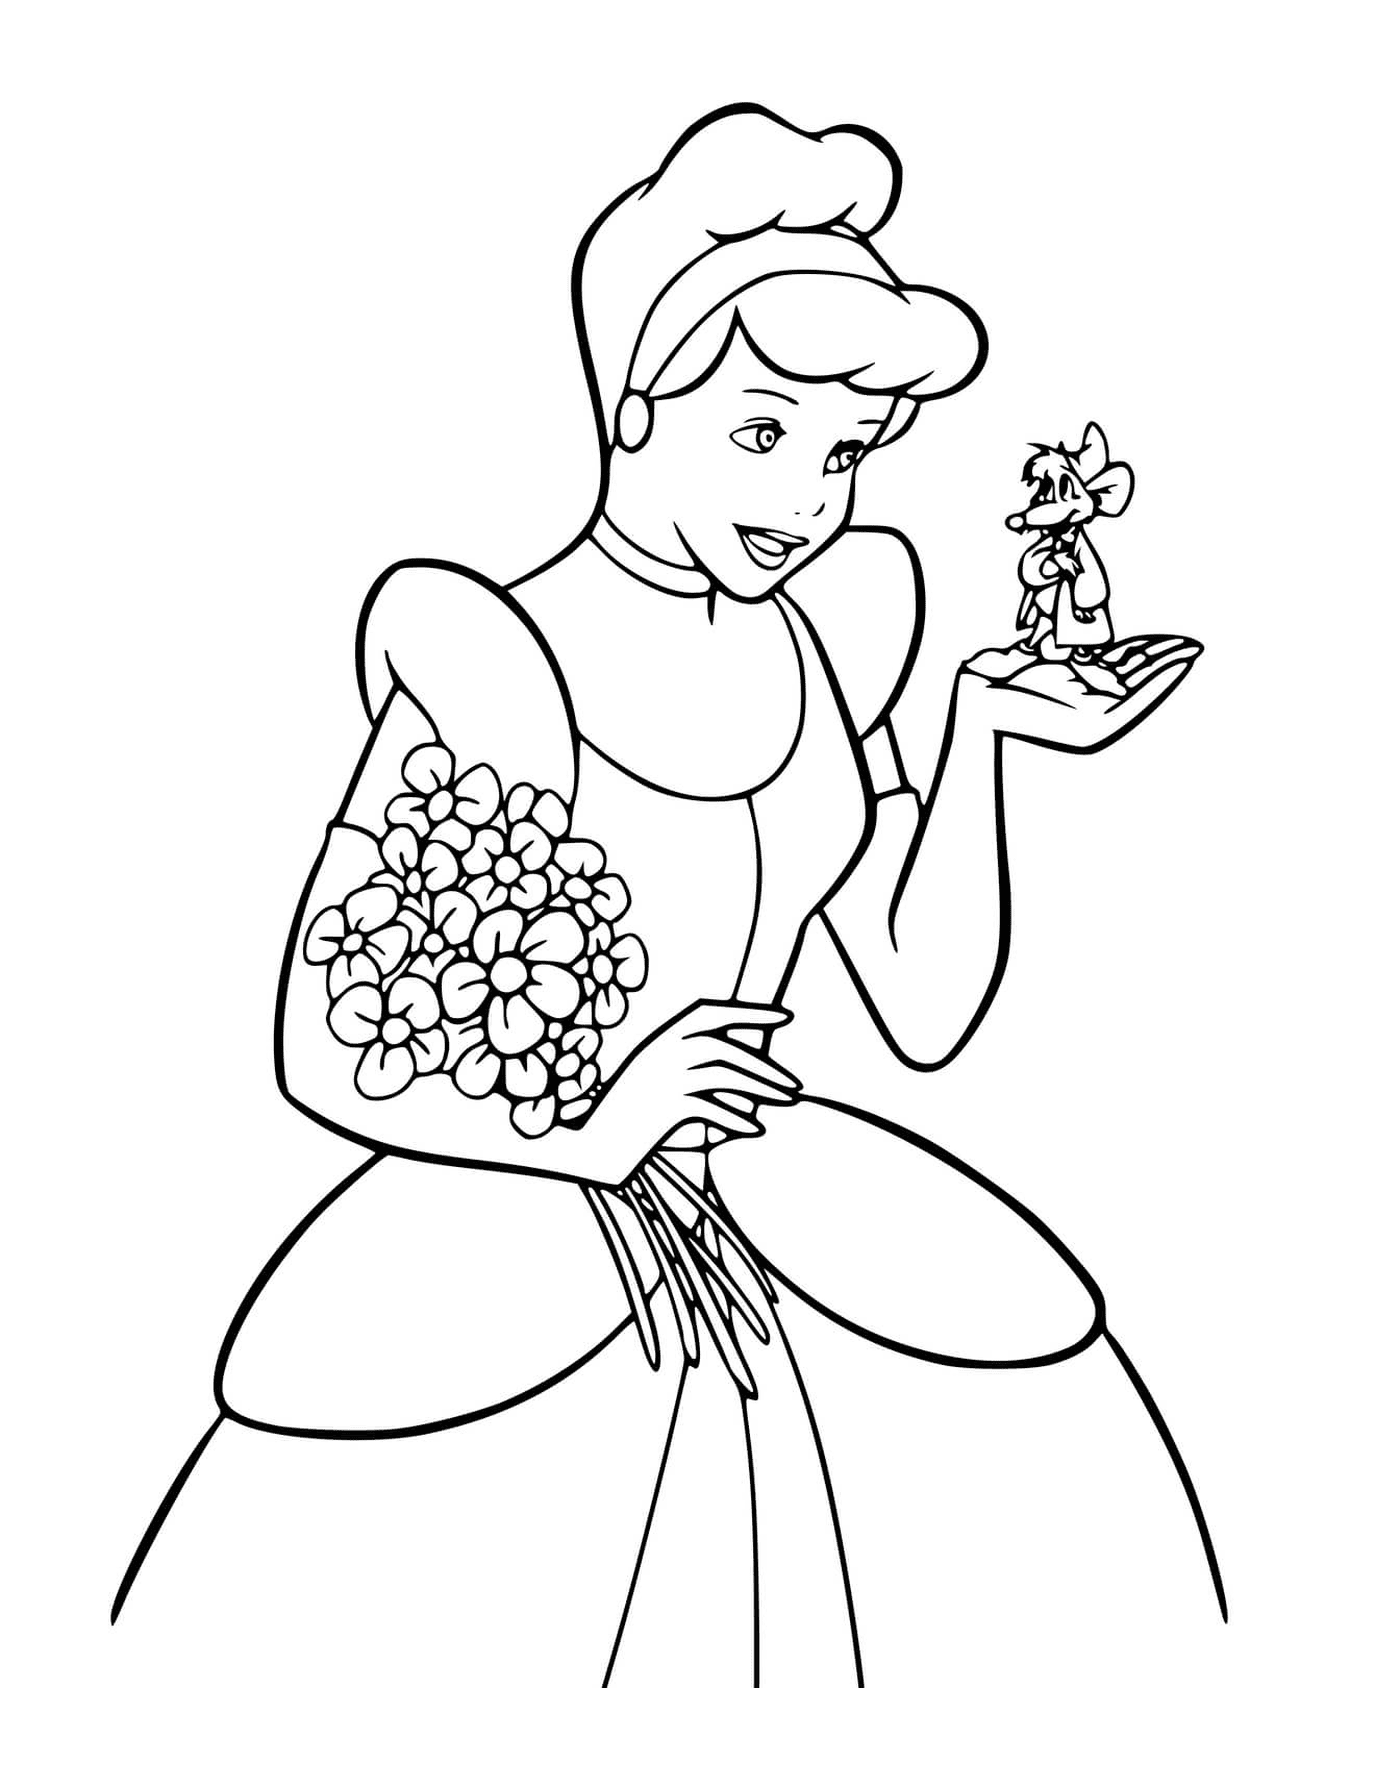  一个女人拿着鲜花 